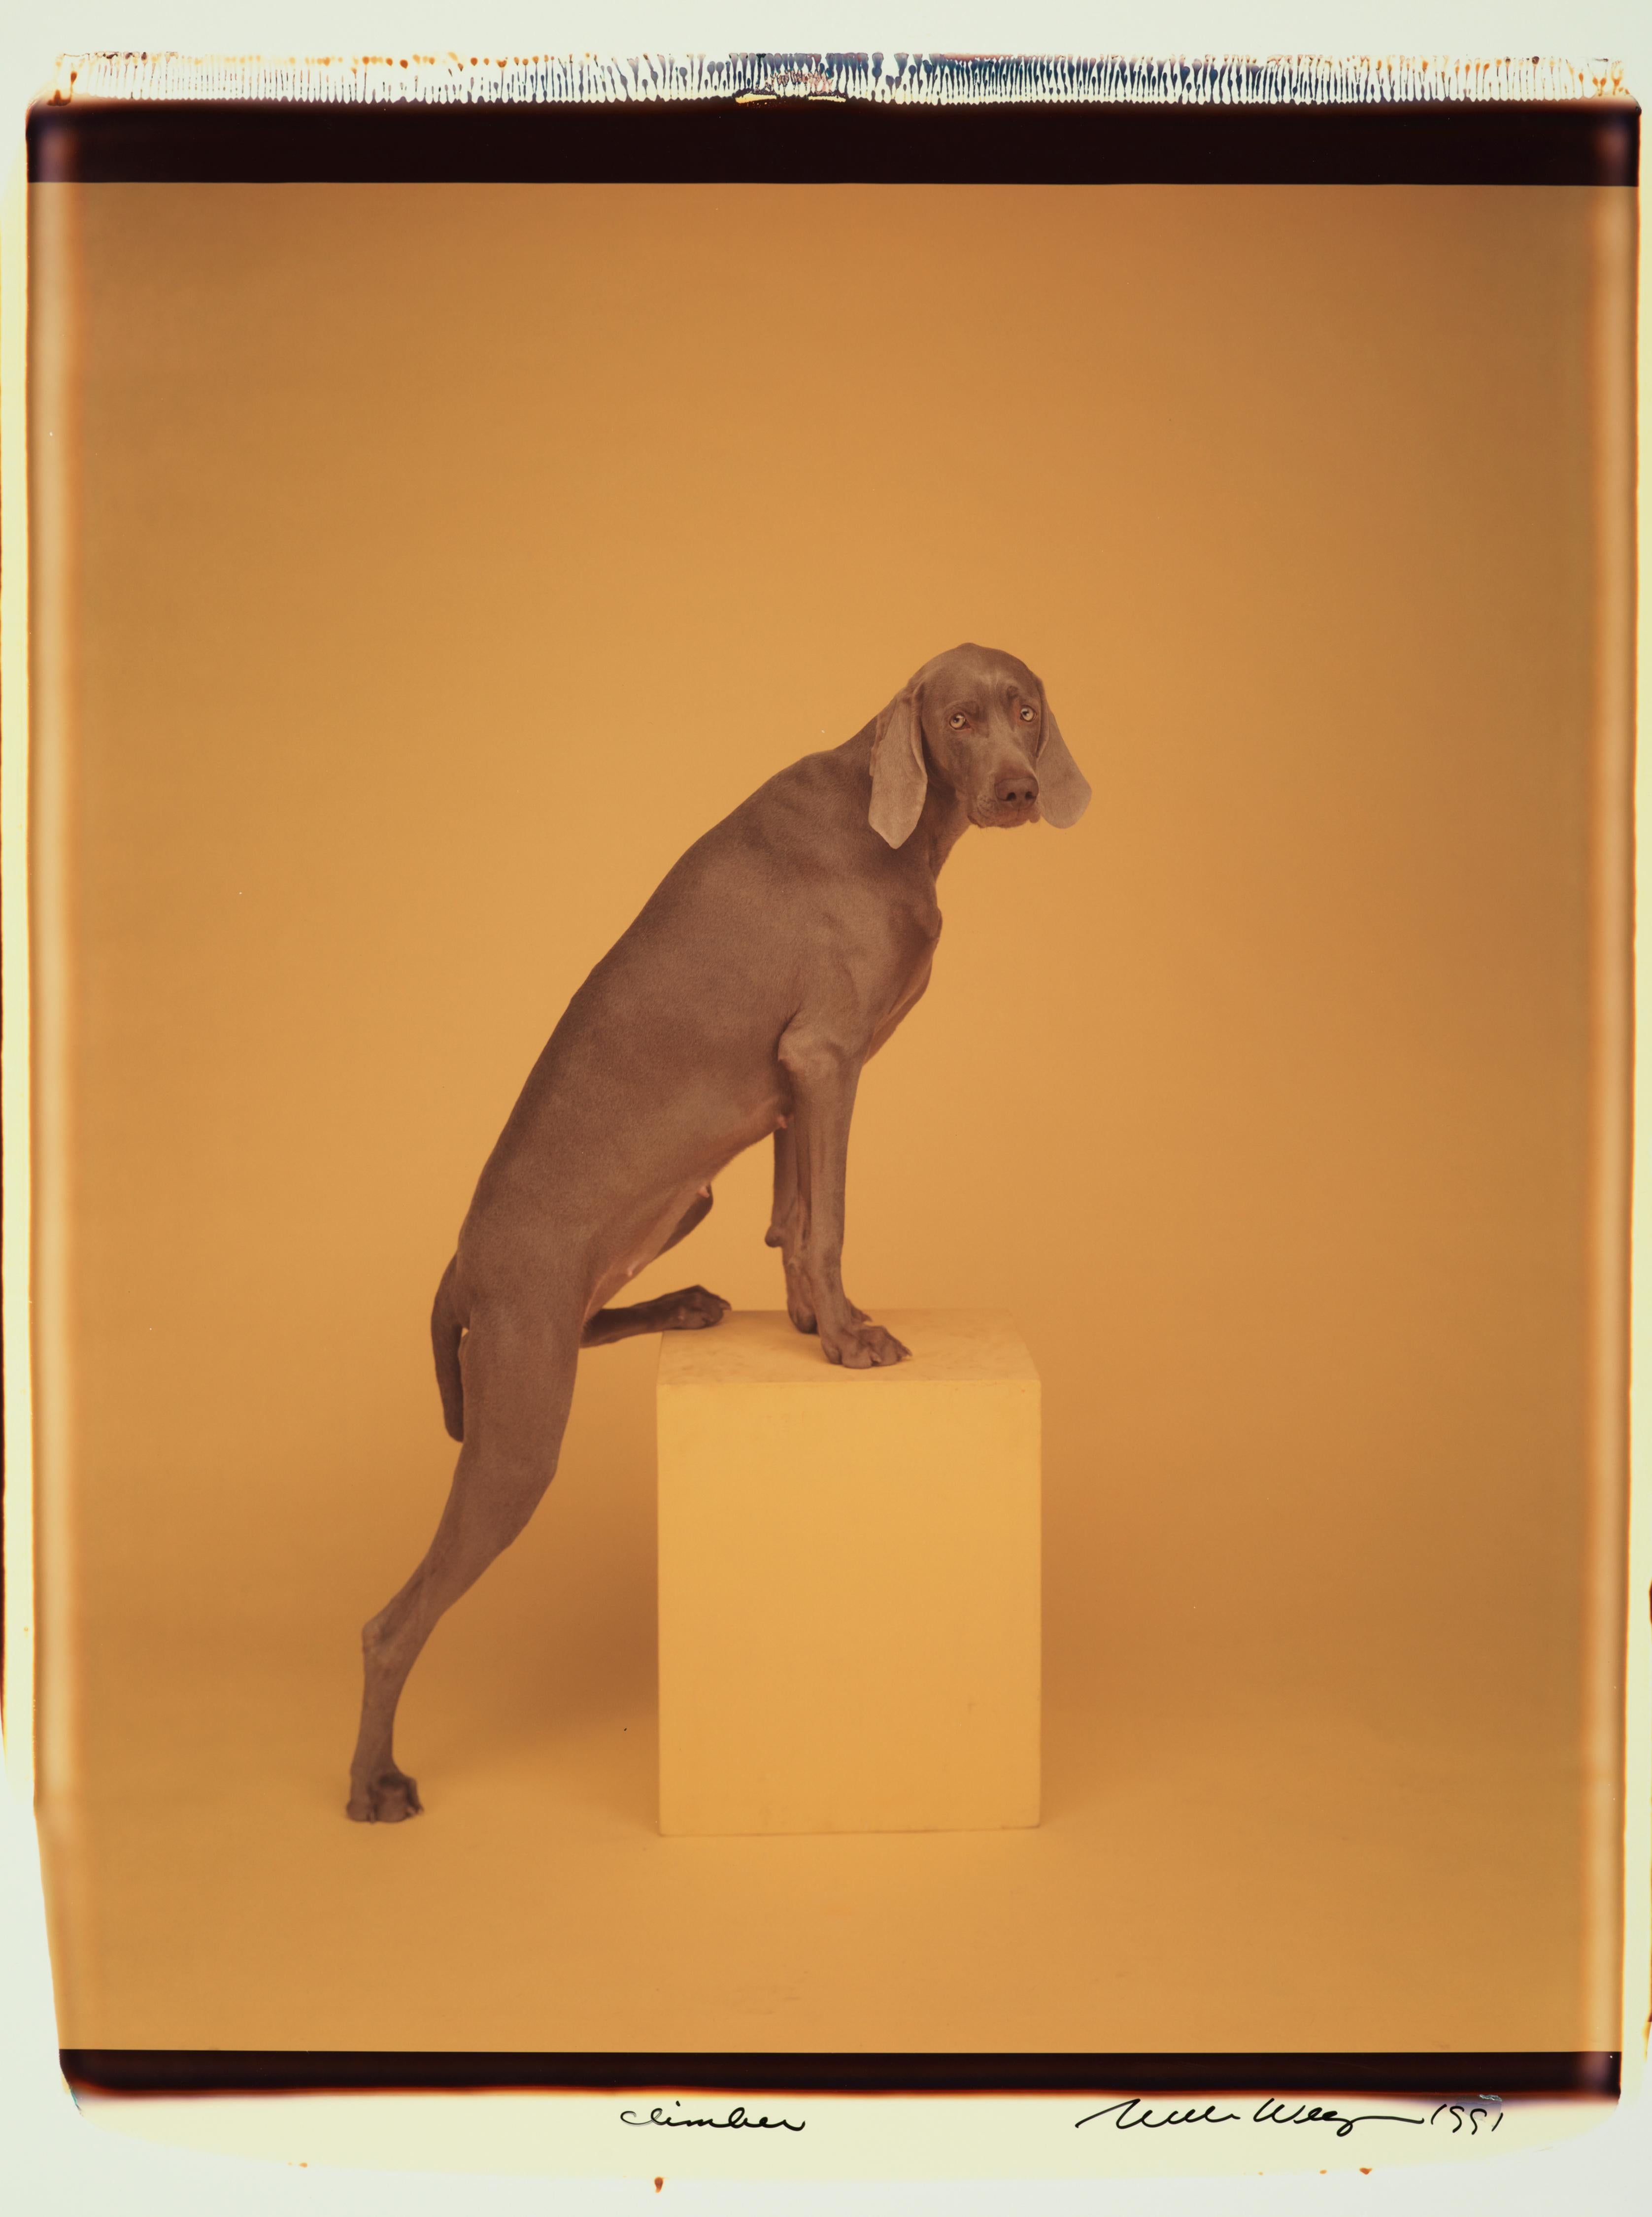 Grimpeur - William Wegman (Photographie couleur)
Signé et inscrit avec le titre
Tirage polaroïd couleur unique, imprimé en 1991
24 x 20 pouces

Les chiens, perruqués et parés de tenues et d'accessoires, présentent un large éventail de personnages